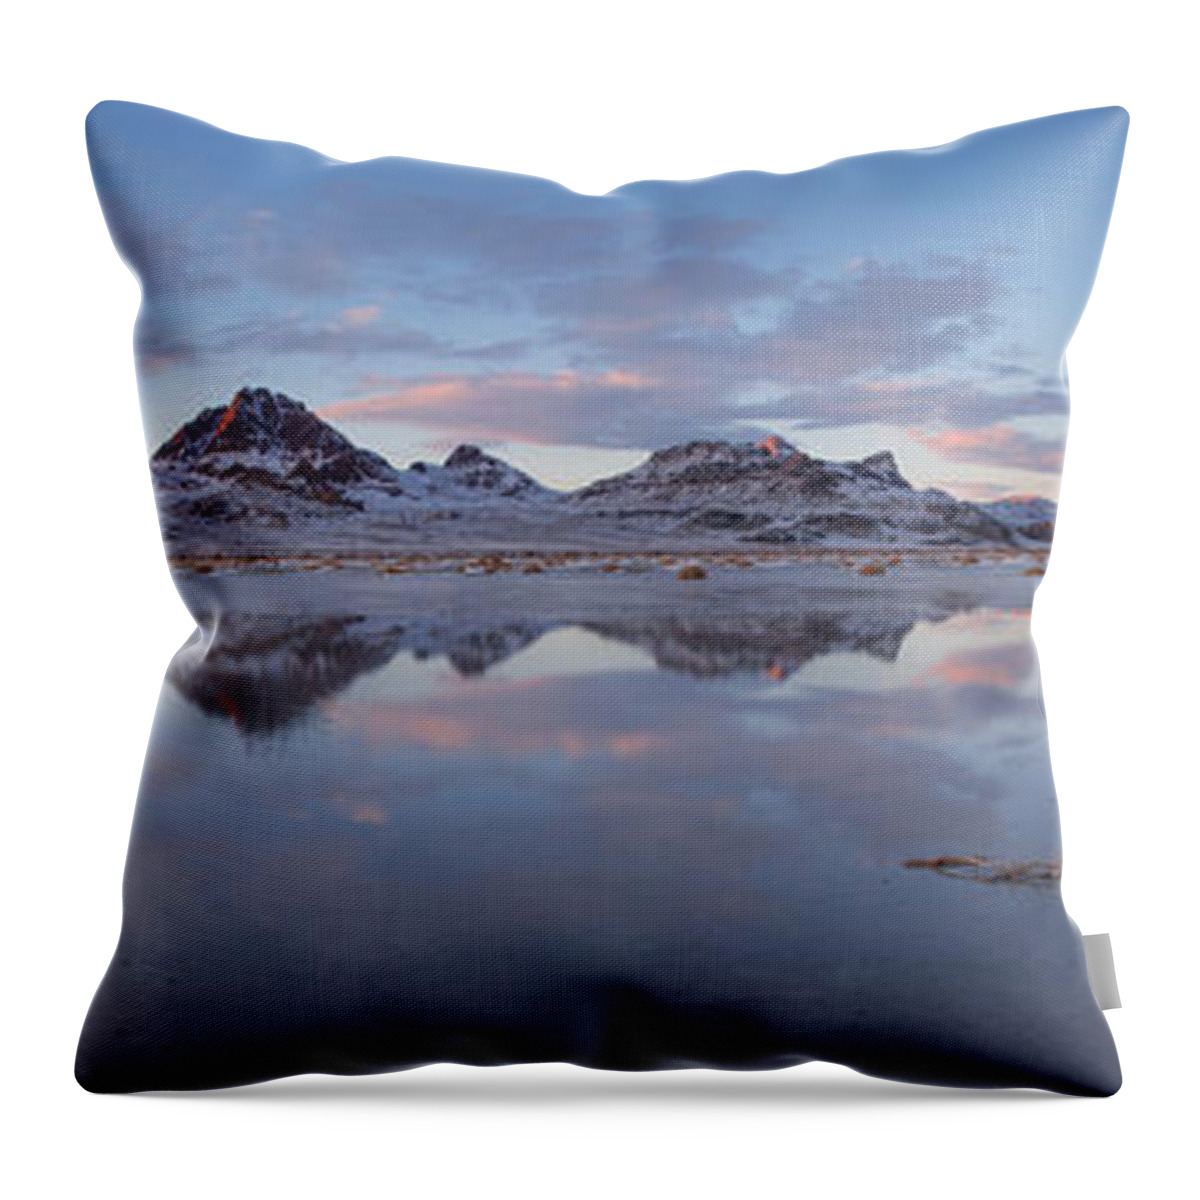 Winter Salt Flats Throw Pillow featuring the photograph Winter Salt Flats by Chad Dutson